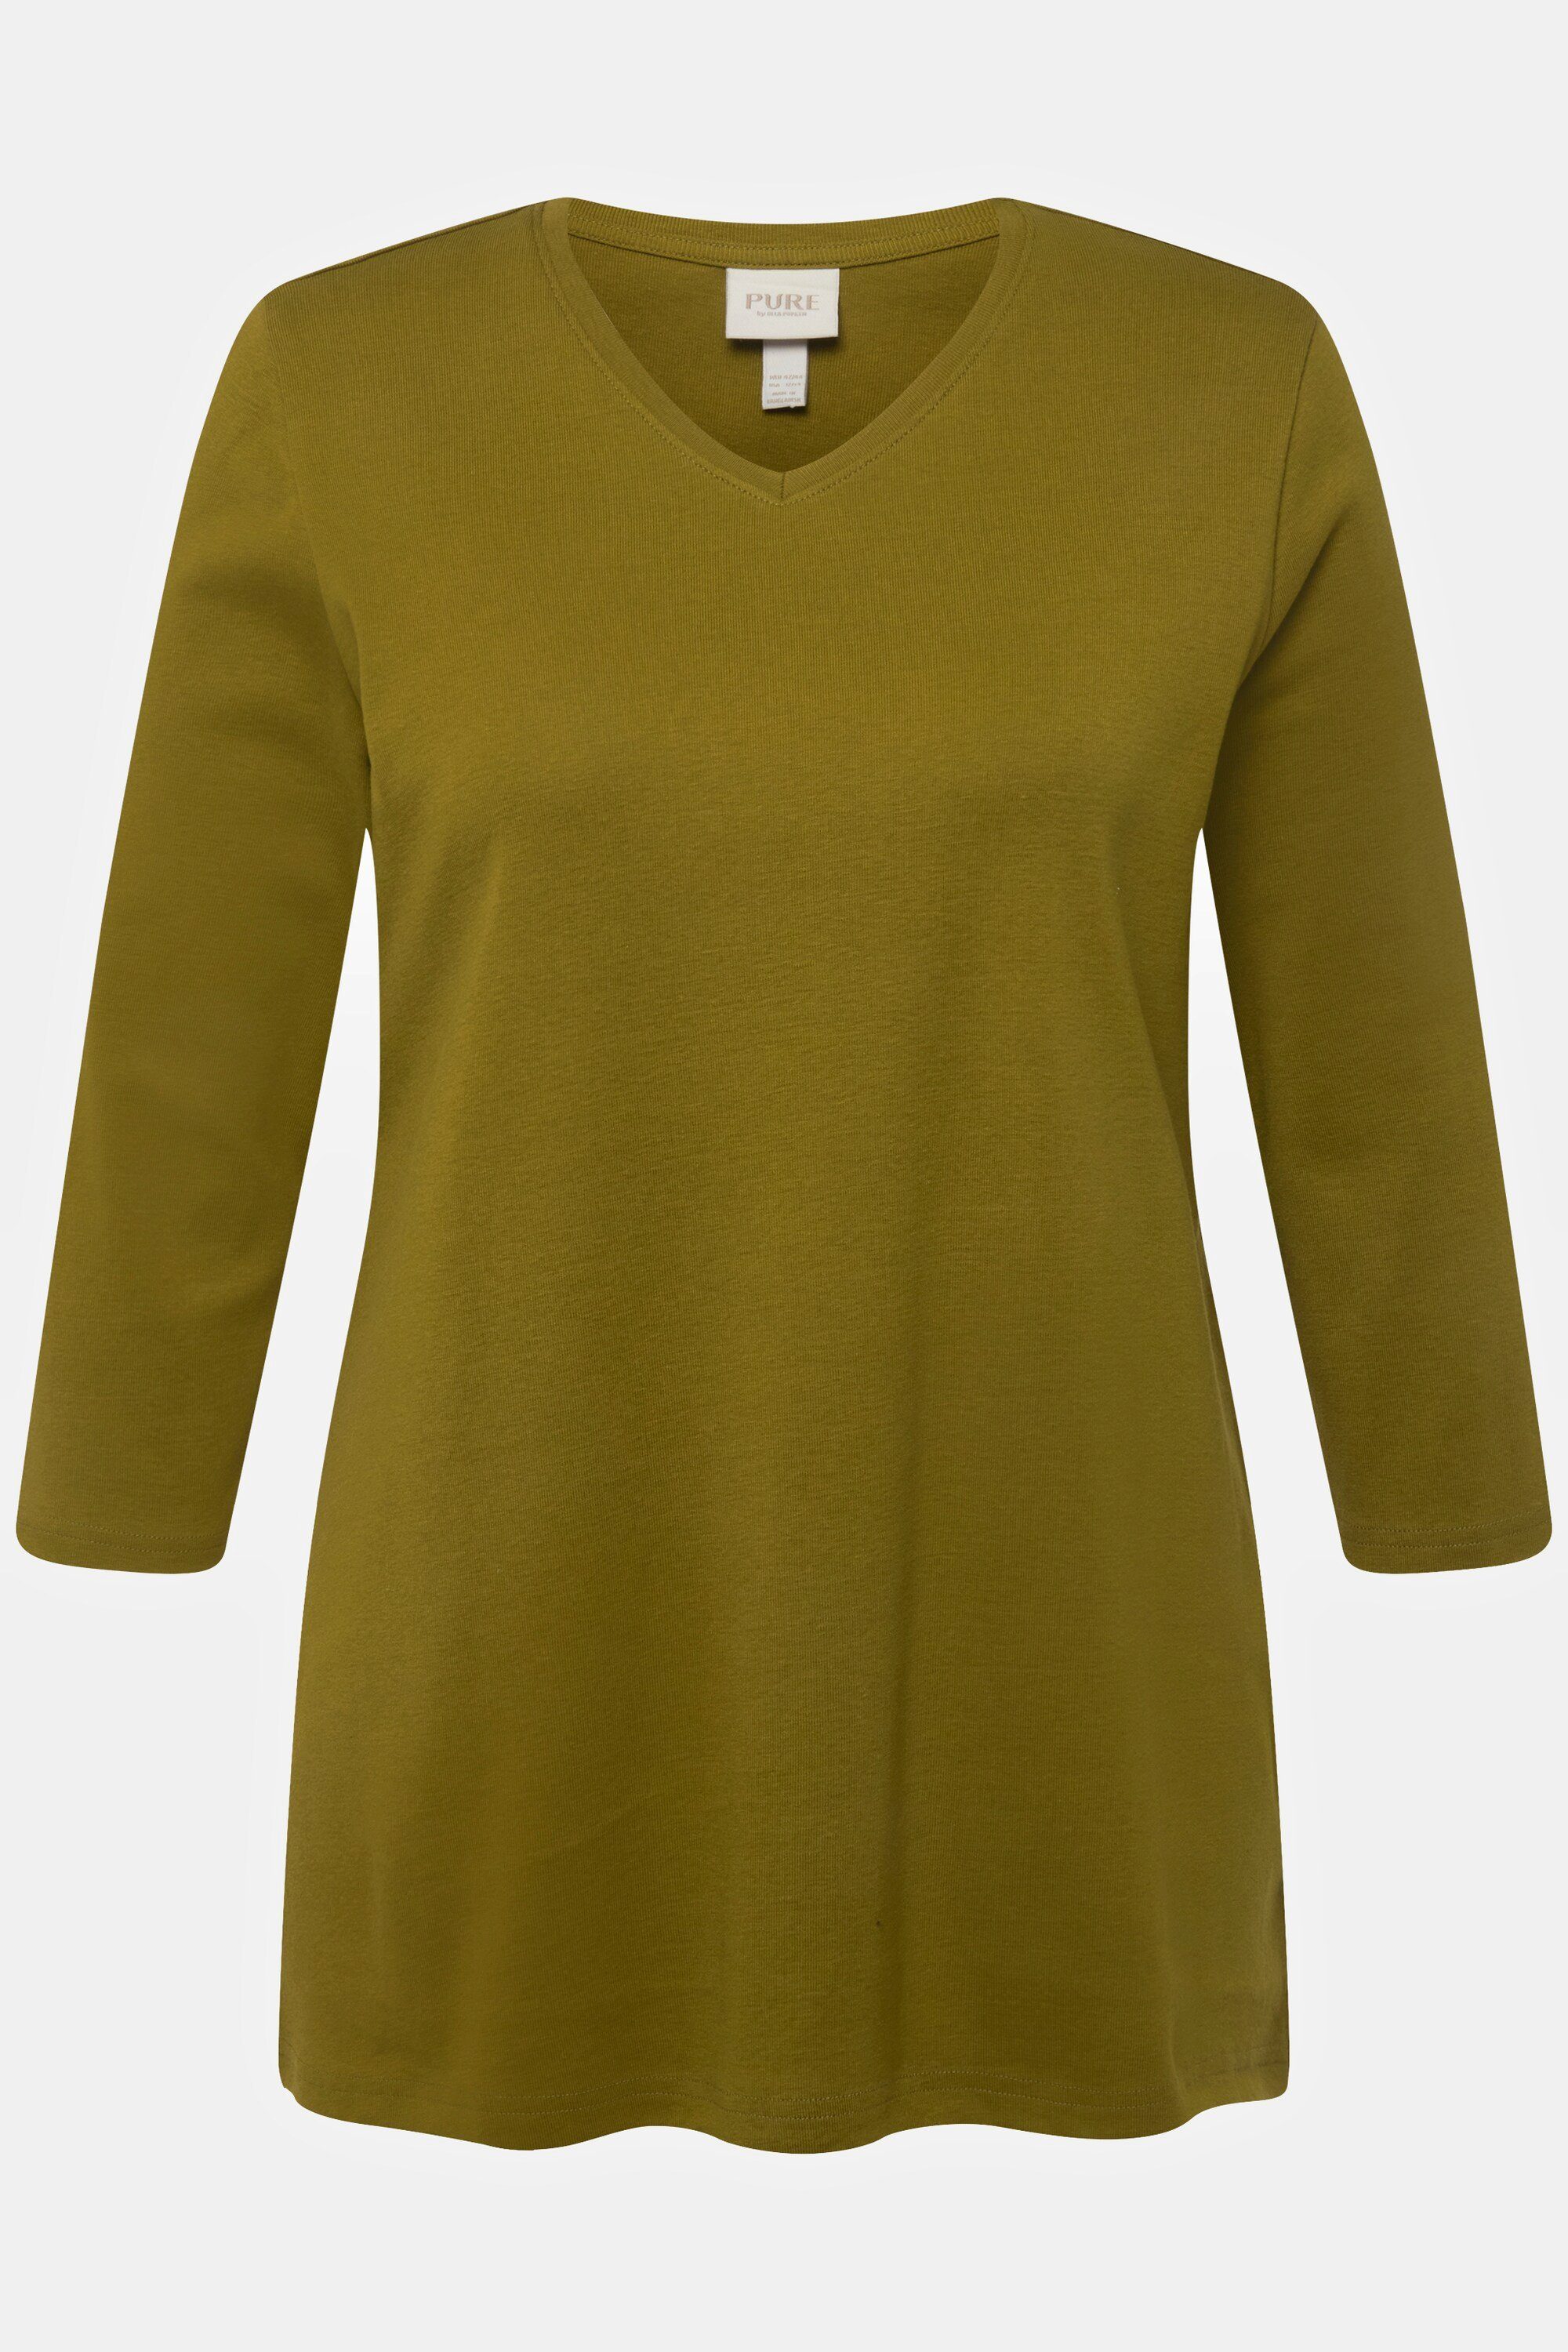 Rippjersey Rundhalsshirt V-Ausschnitt 3/4-Arm Ulla Biobaumwolle gelbgrün Shirt Popken